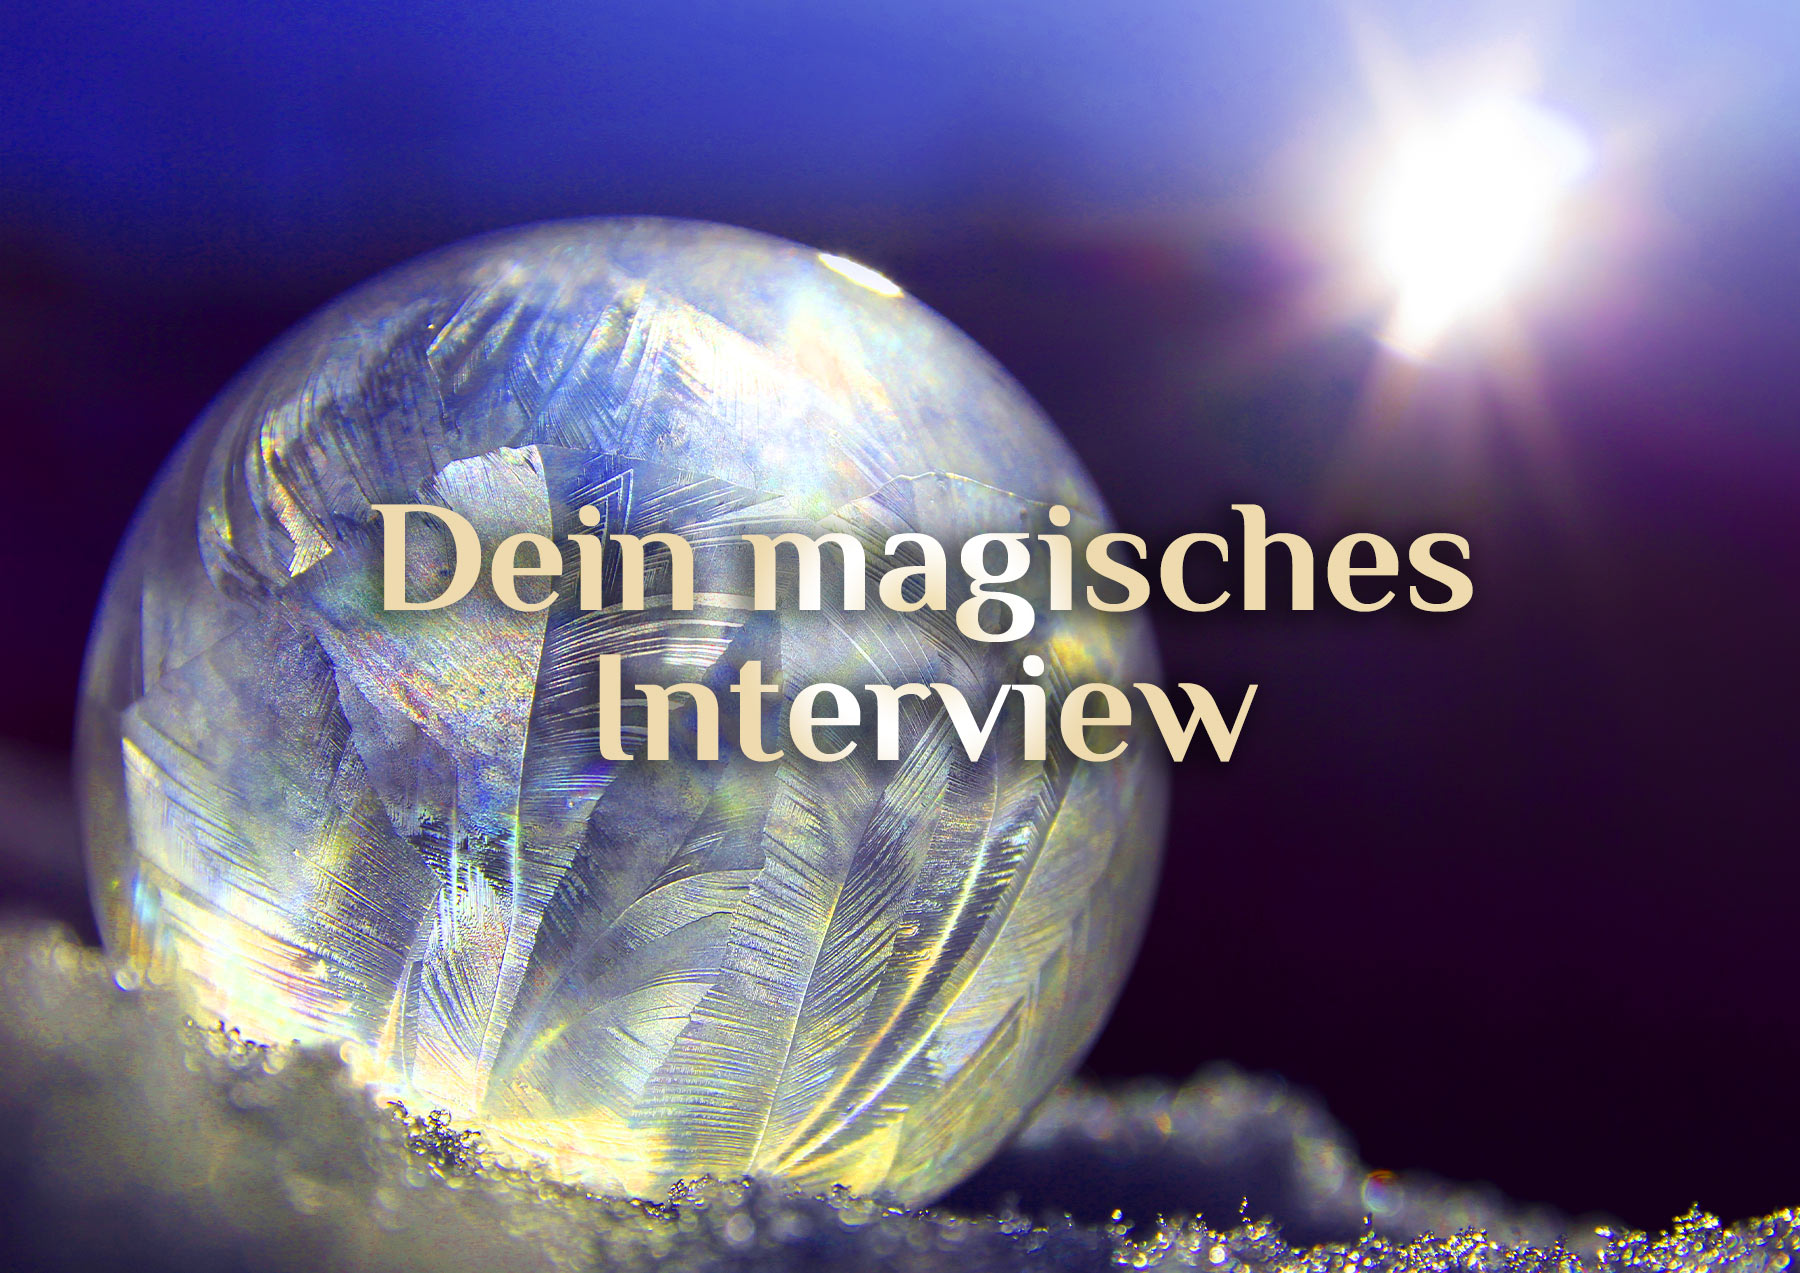 Dein magisches Interview 🦸‍♀️ Die spirituellen Helden unserer Neuzeit 🦸‍♂️